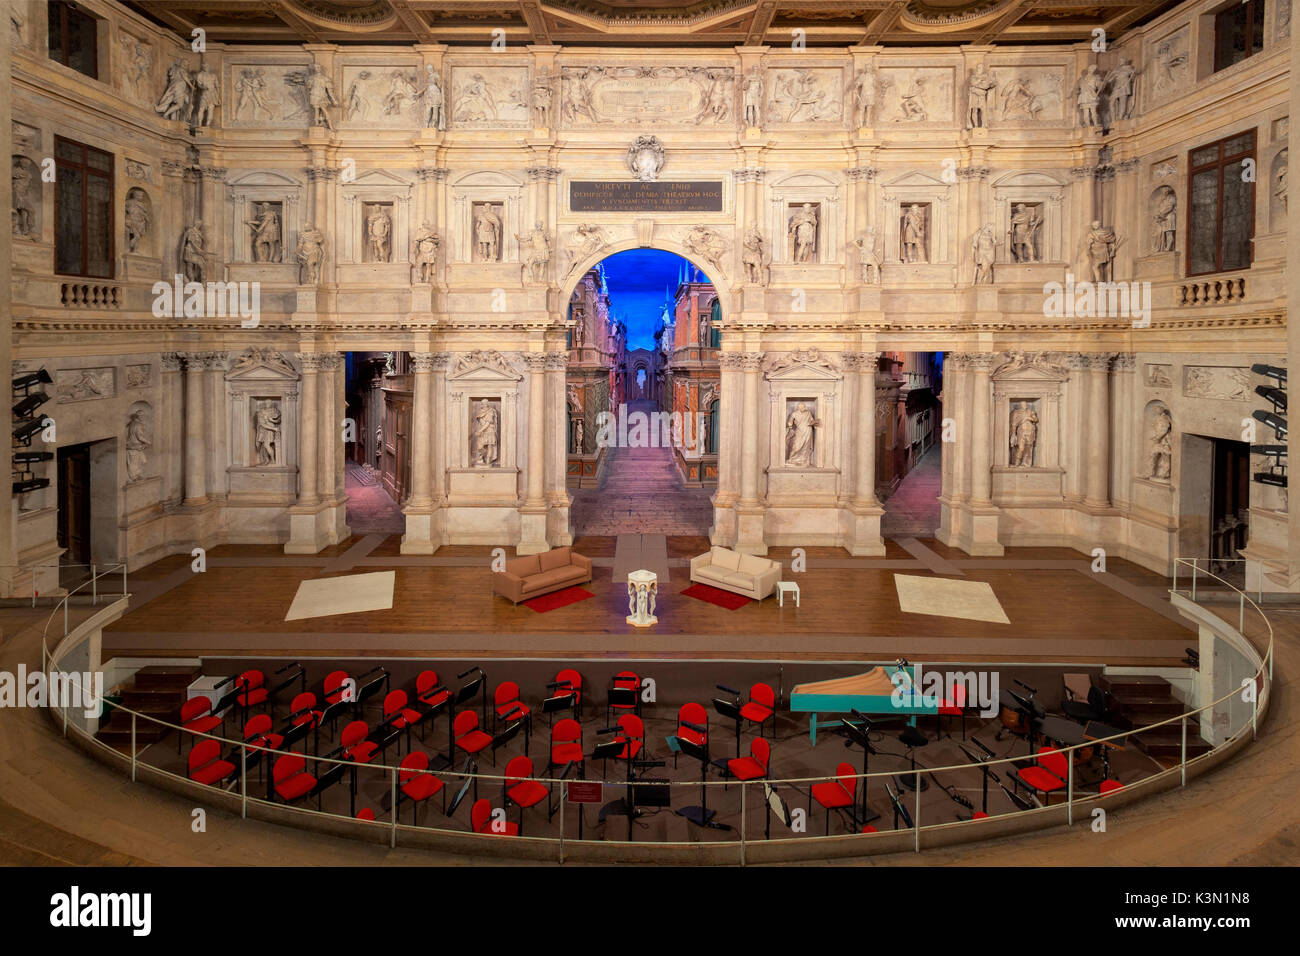 Teatro Olimpico intérieur à Vicenza, Italie Teatro Olimpico de Vicenza est le premier théâtre couvert dans le monde et a été conçu par le célèbre architecte de la Renaissance Andrea Palladio Banque D'Images